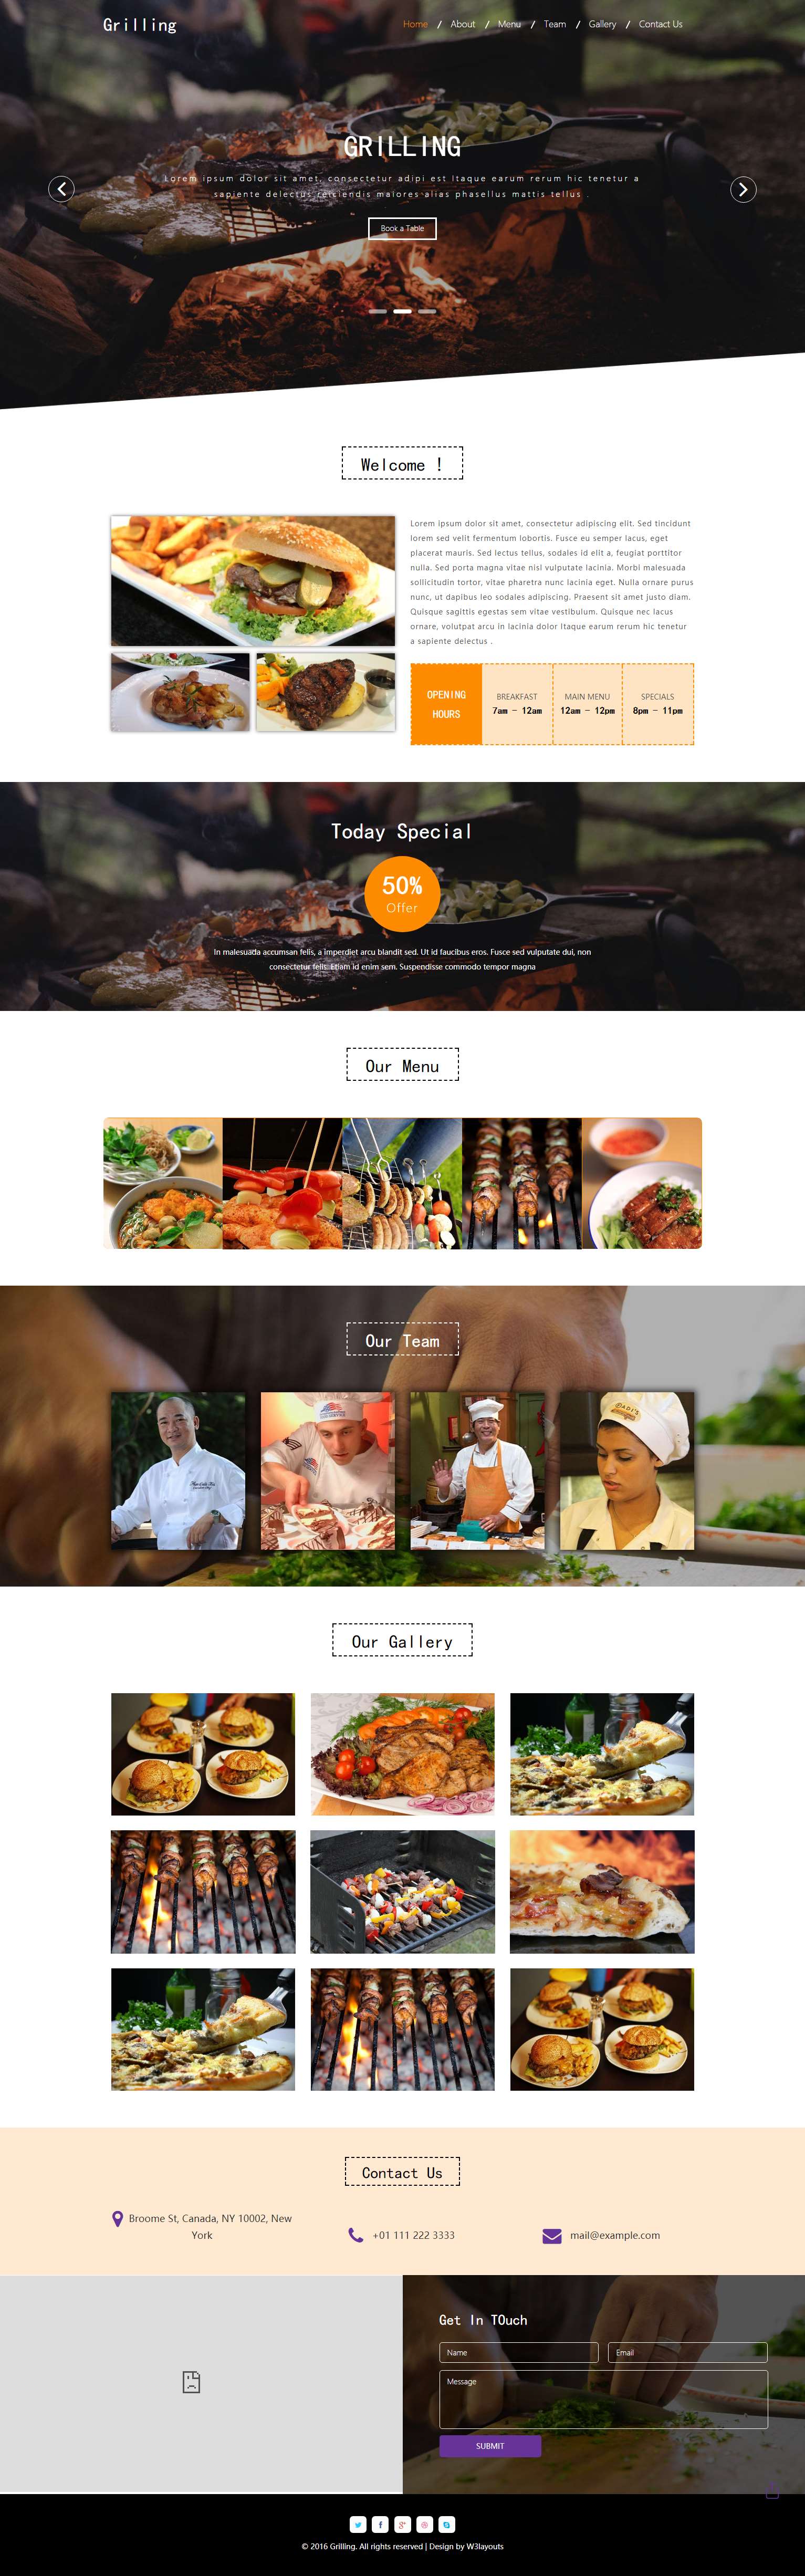 橙色简洁风格的烧烤美食餐厅整站网站源码下载